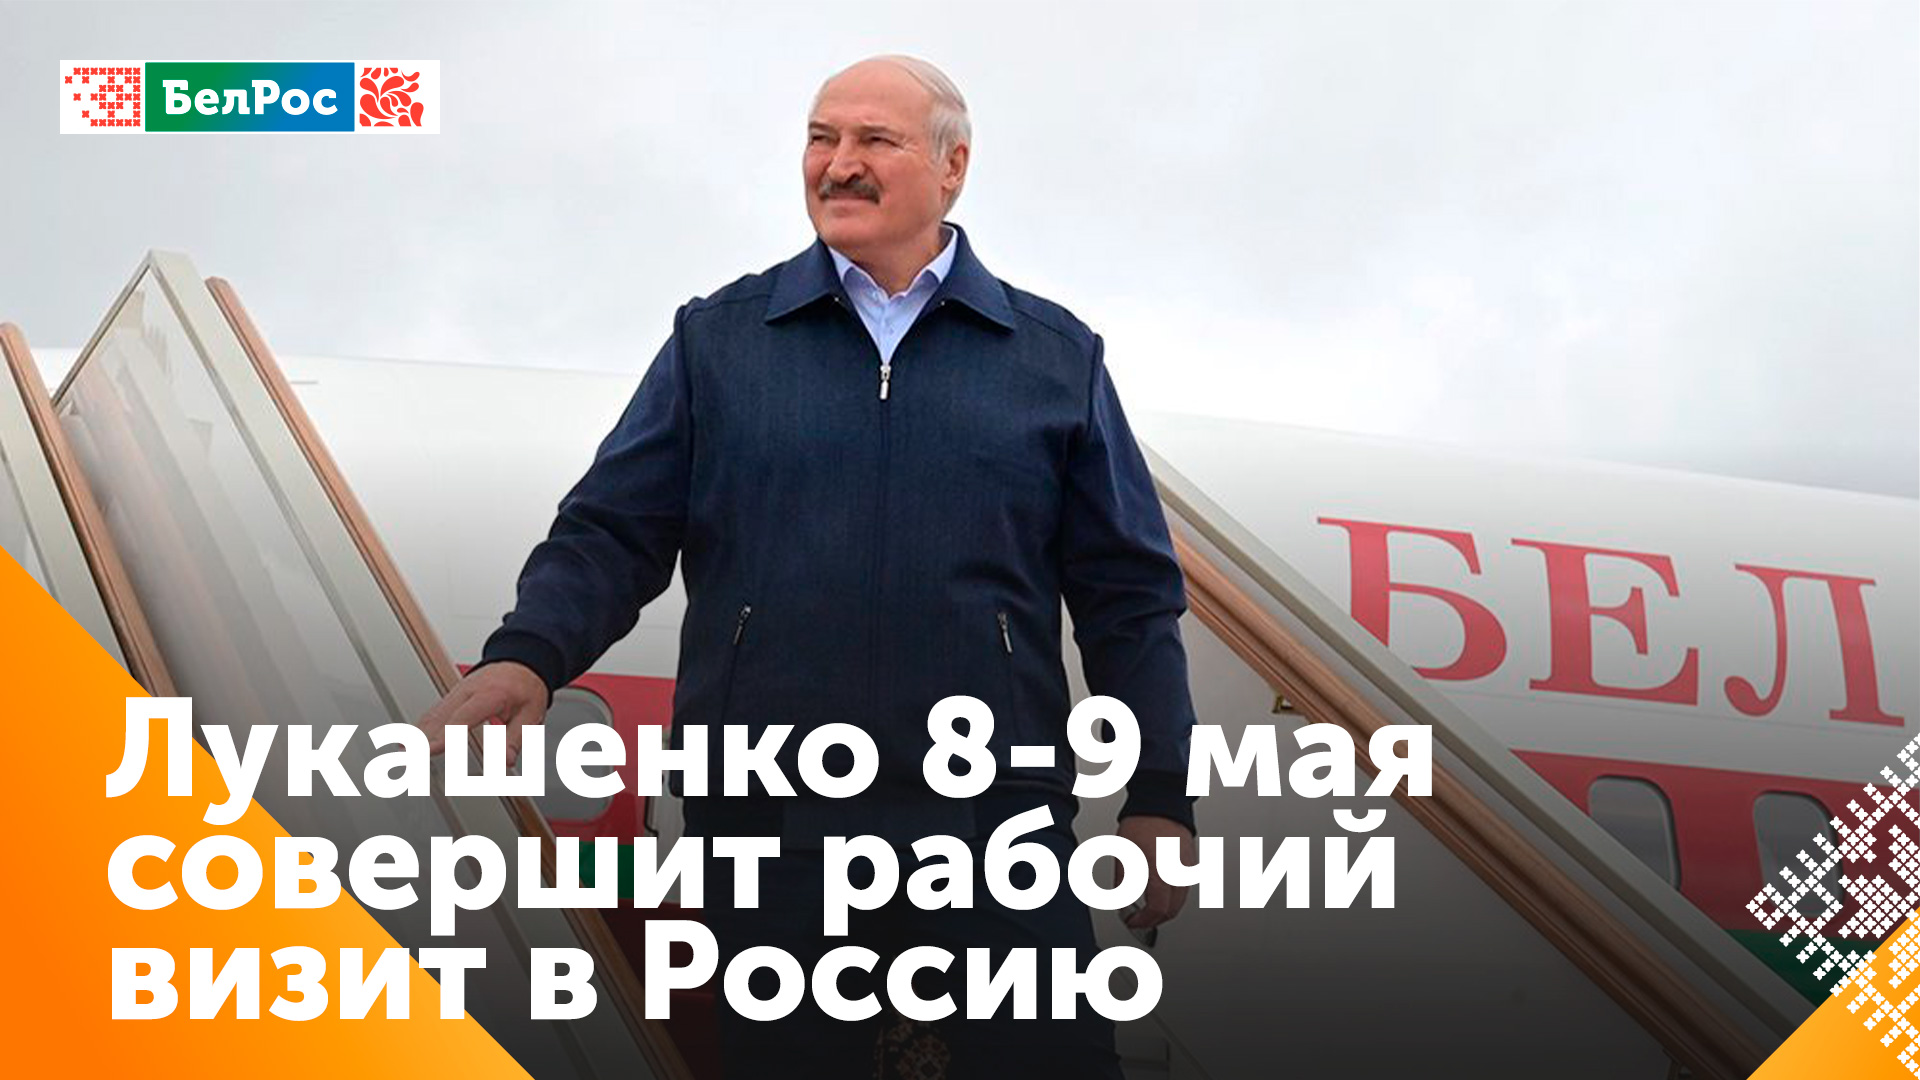 Президент Беларуси совершит рабочий визит в Россию